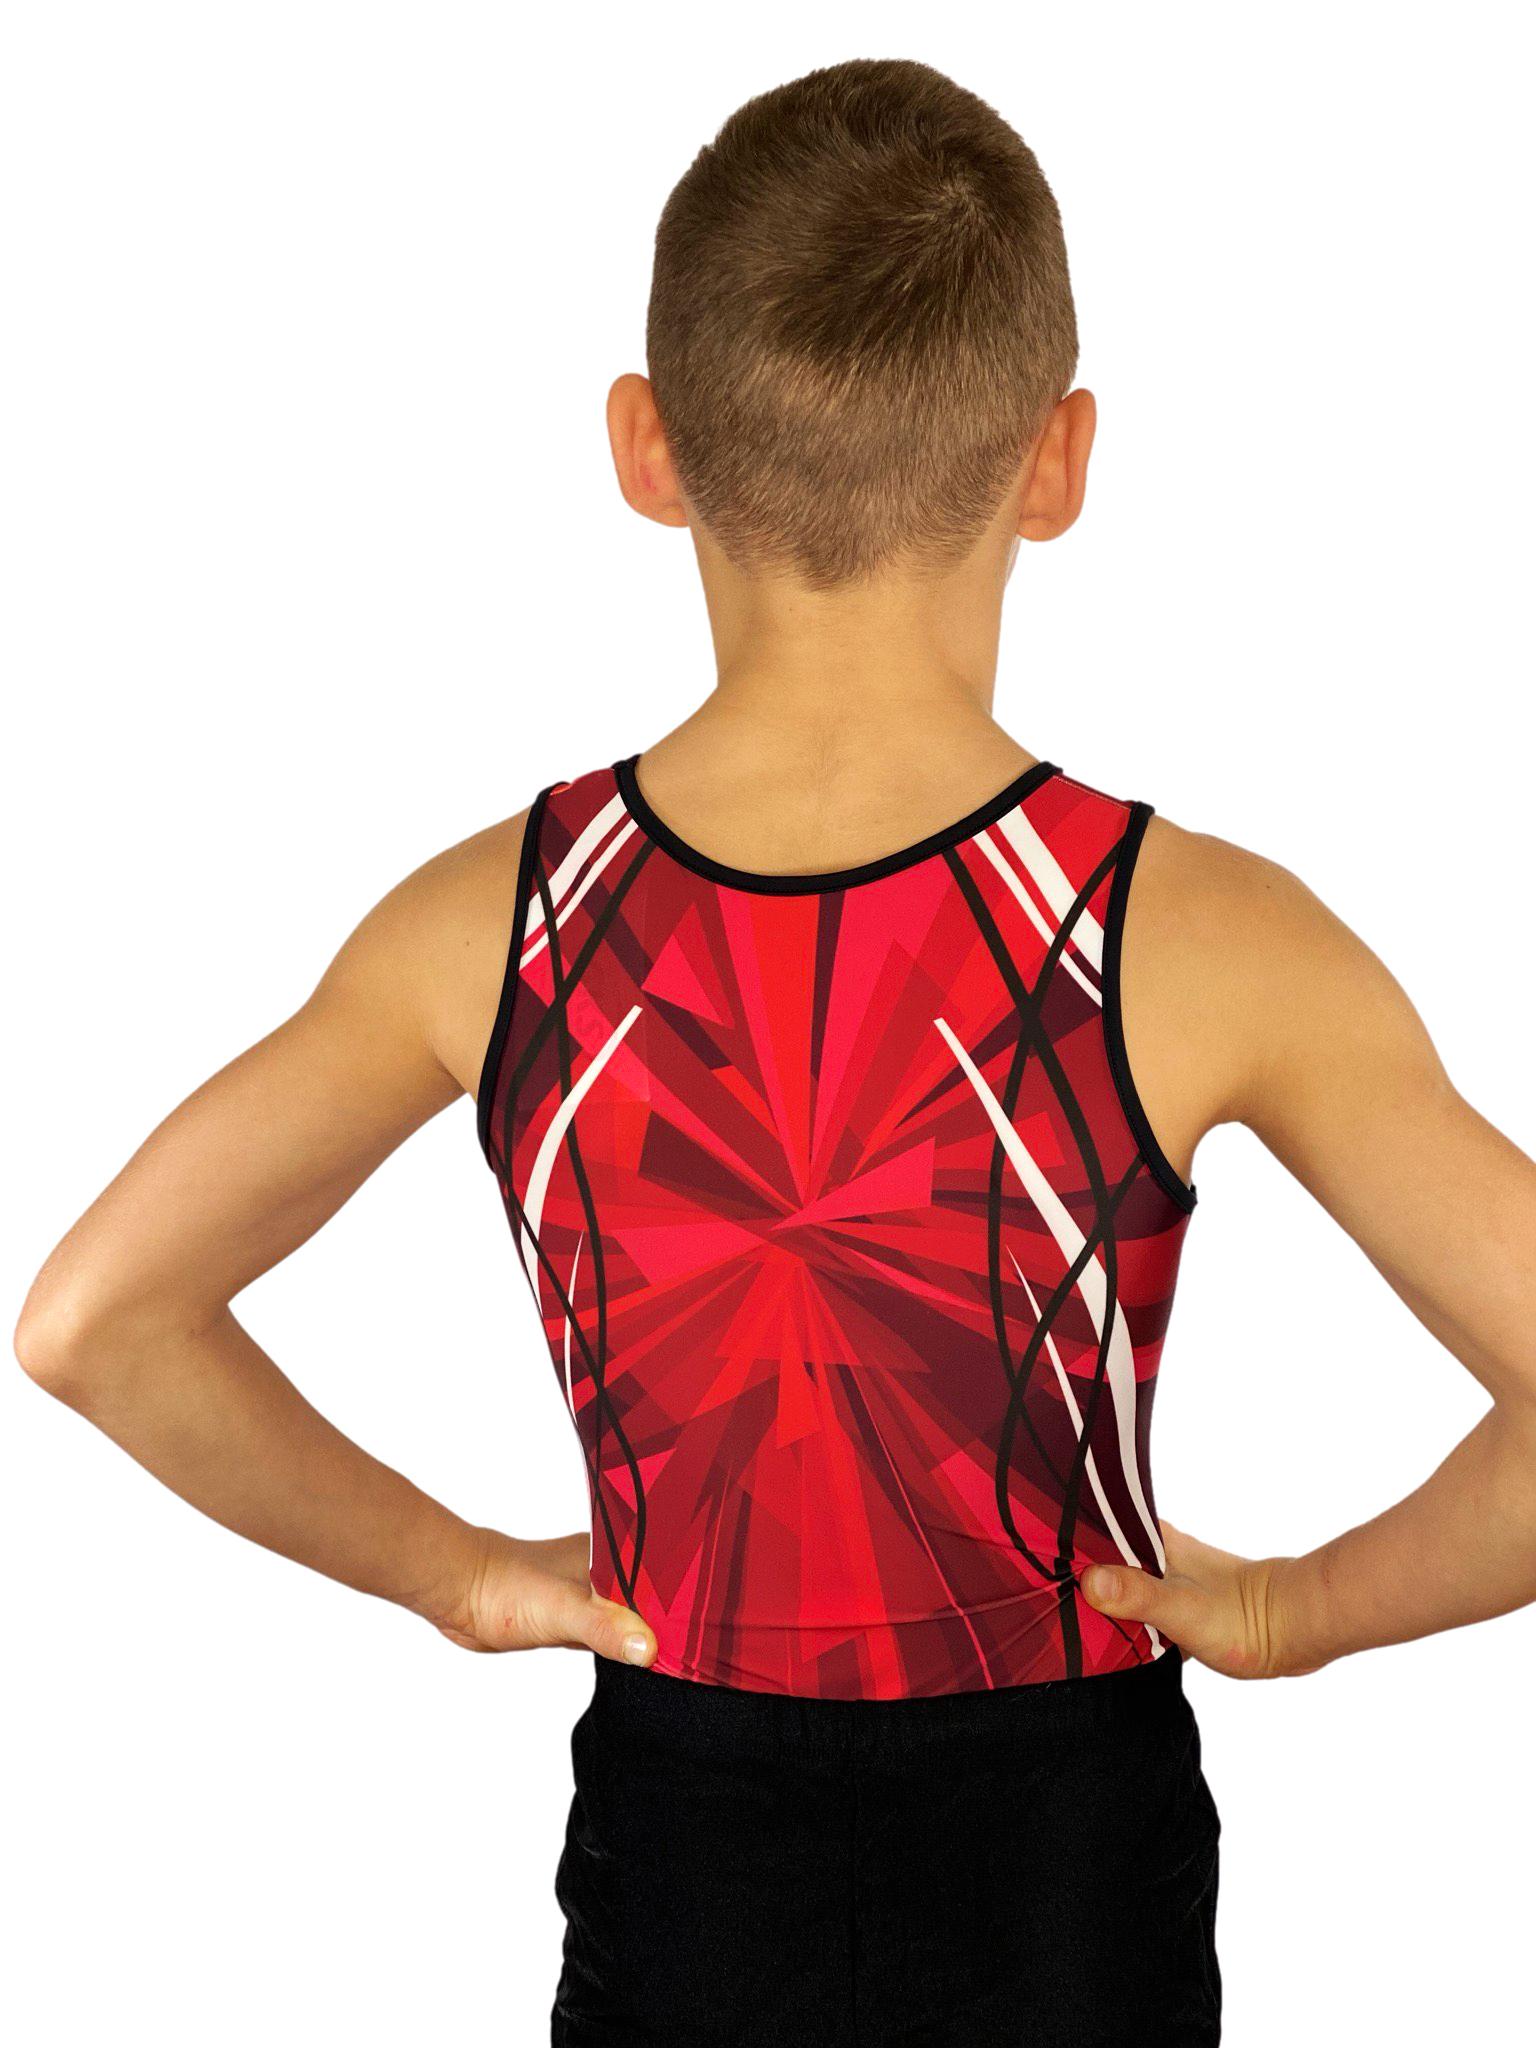 Купальник мужской для спортивной гимнастики GK Sport 201-12 красно-черный без рукава